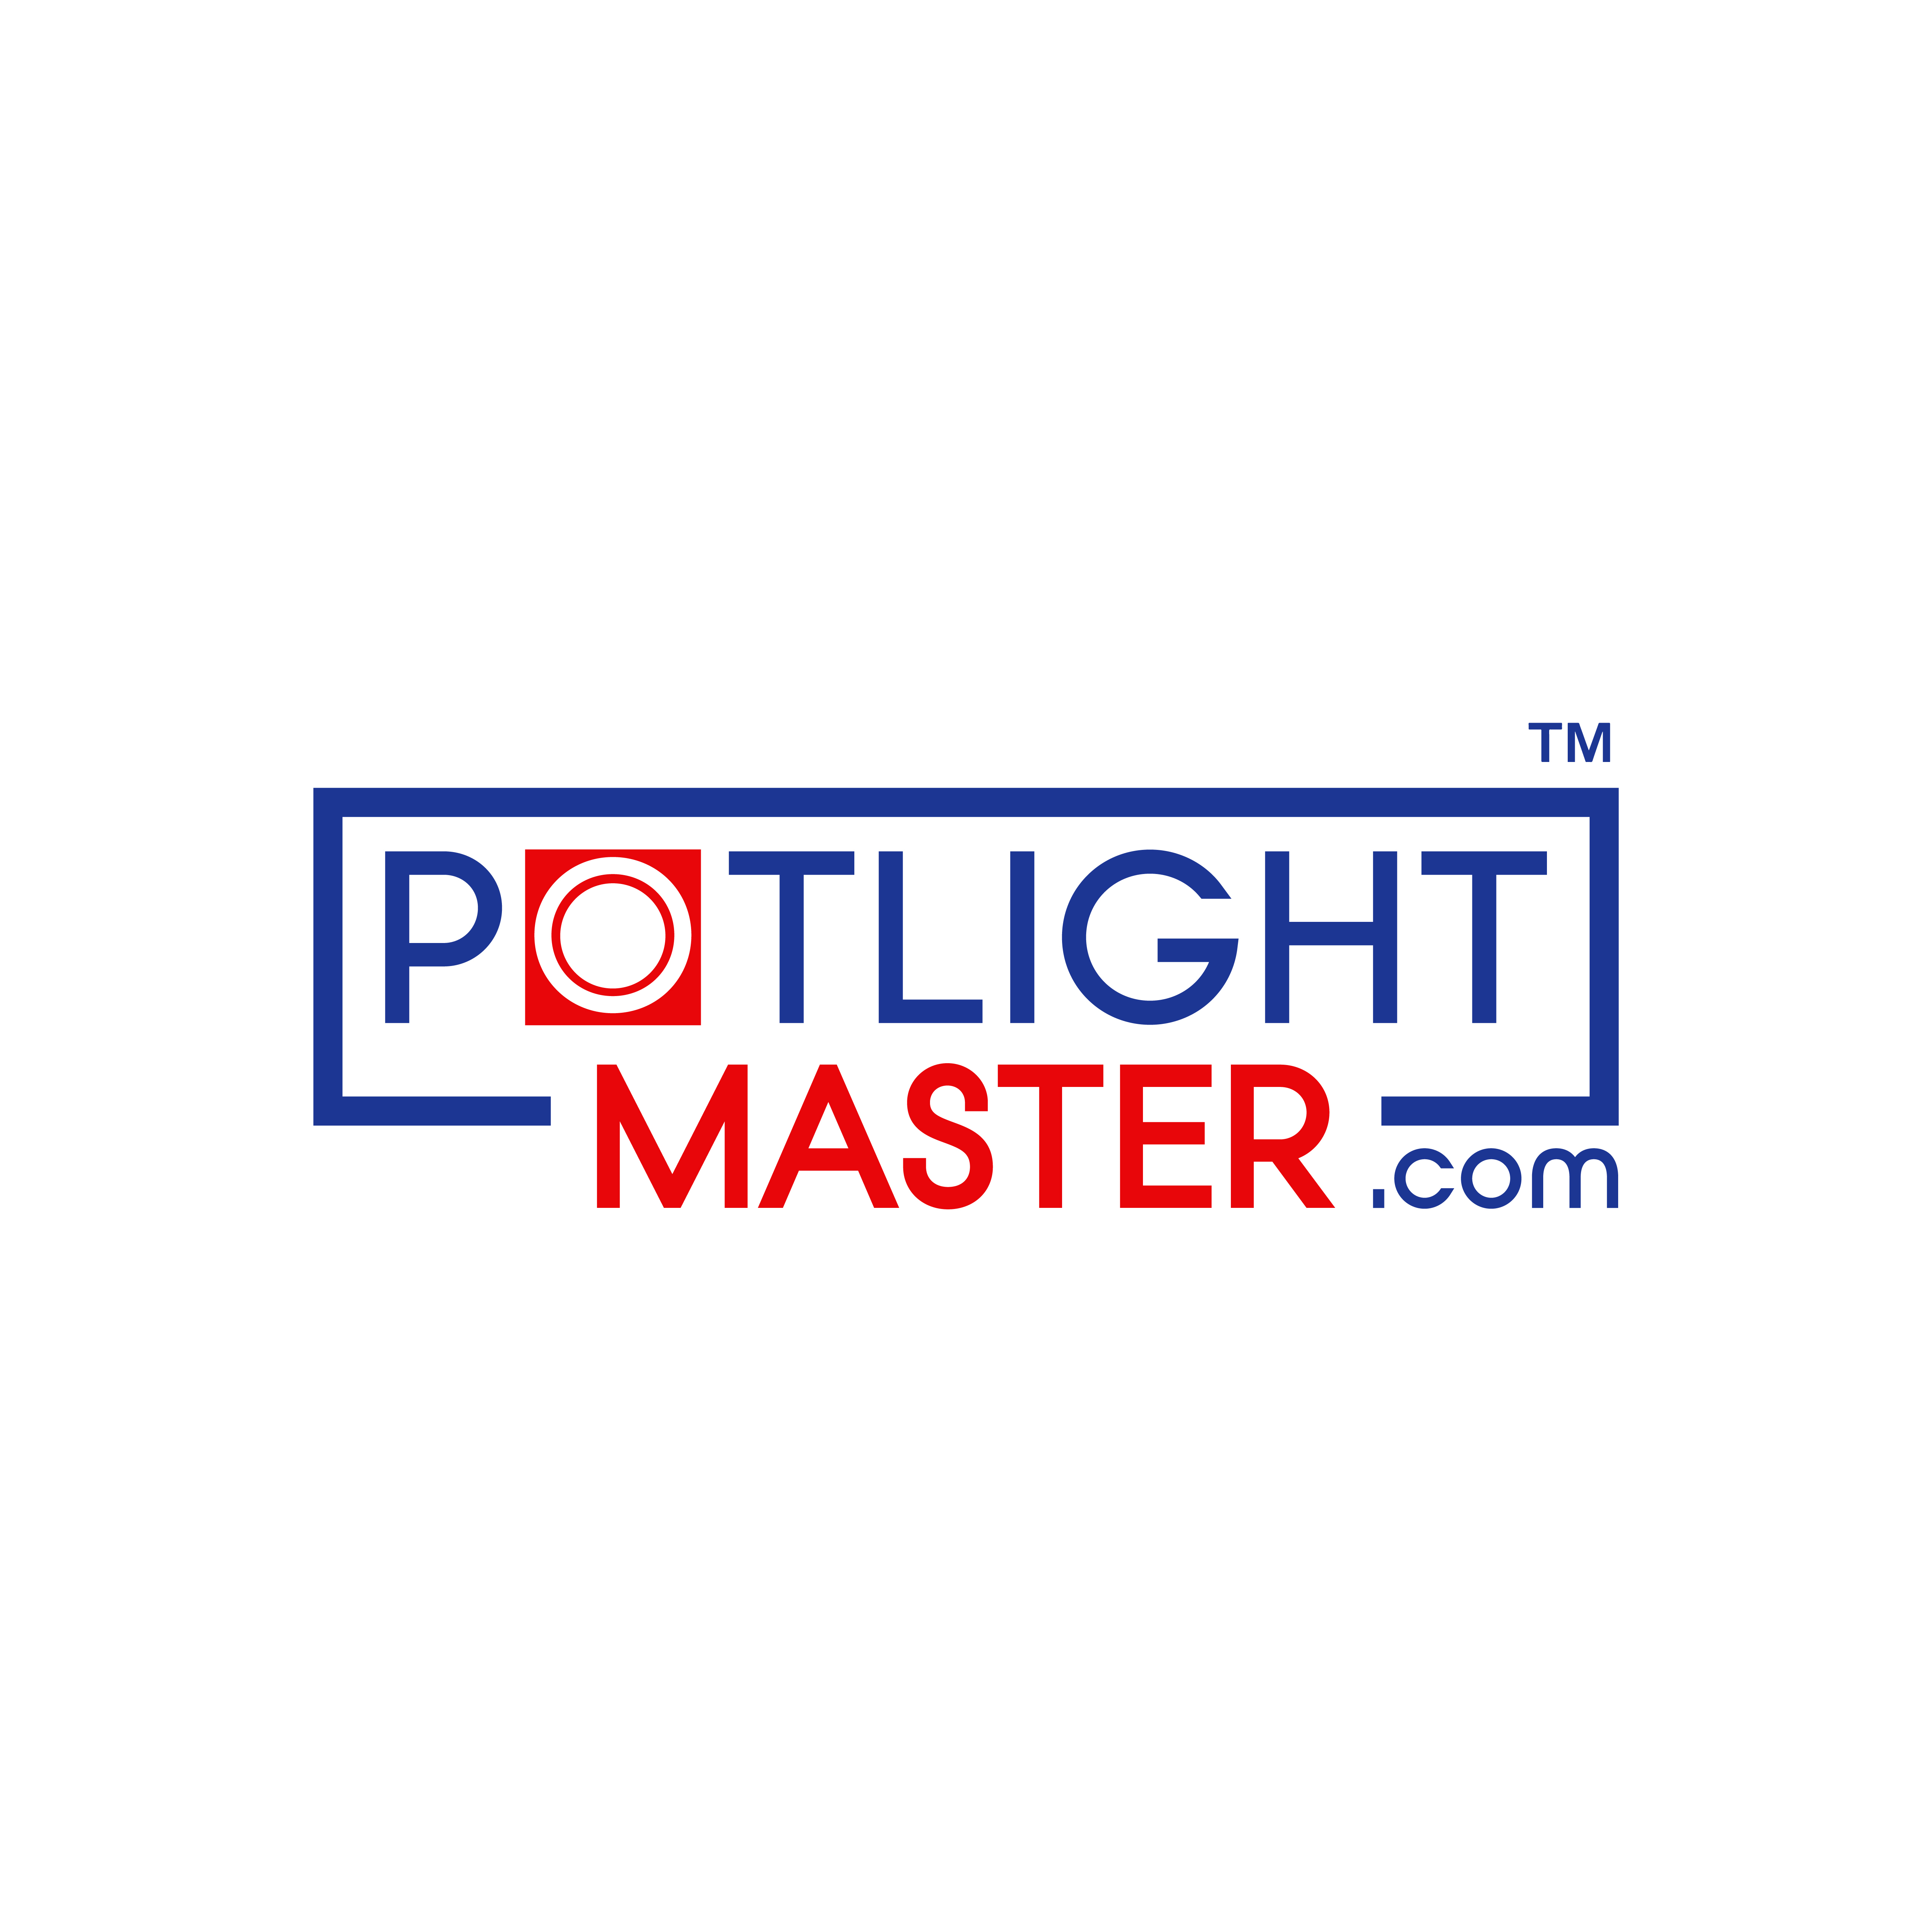 Potlight Master's logo